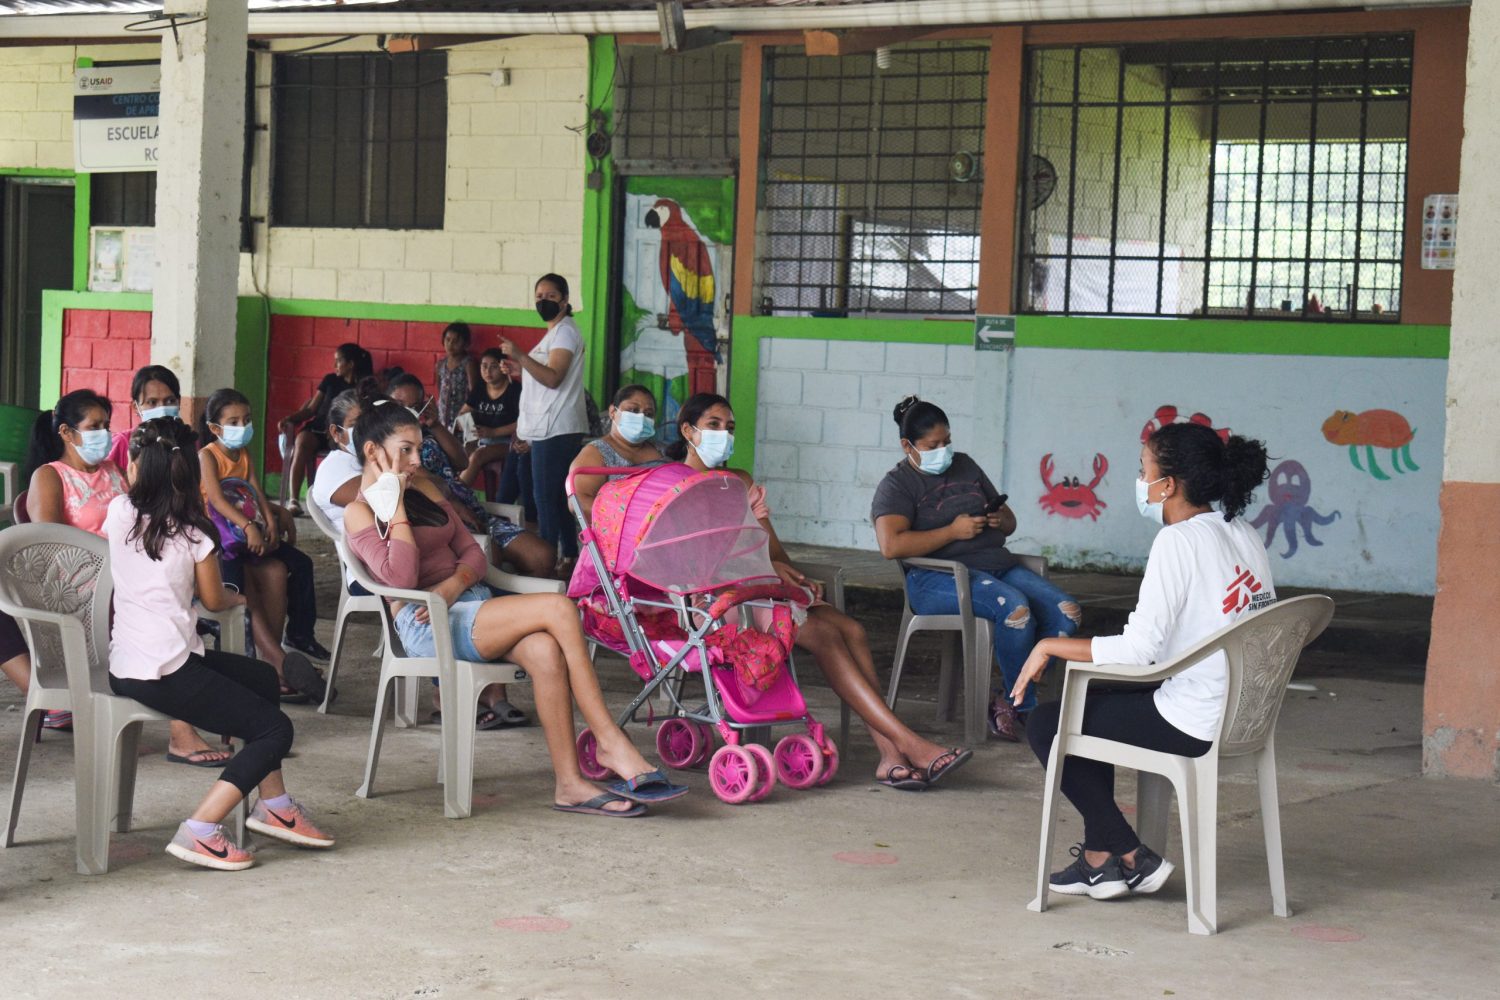 Nuestro equipo de promoción de la salud en el norte de Honduras ofrece charlas de salud sexual y reproductiva en diferentes comunidades empobrecidas con altos índices de violencia y de mujeres y adolescentes embarazadas.MSF/Laura Aceituno.